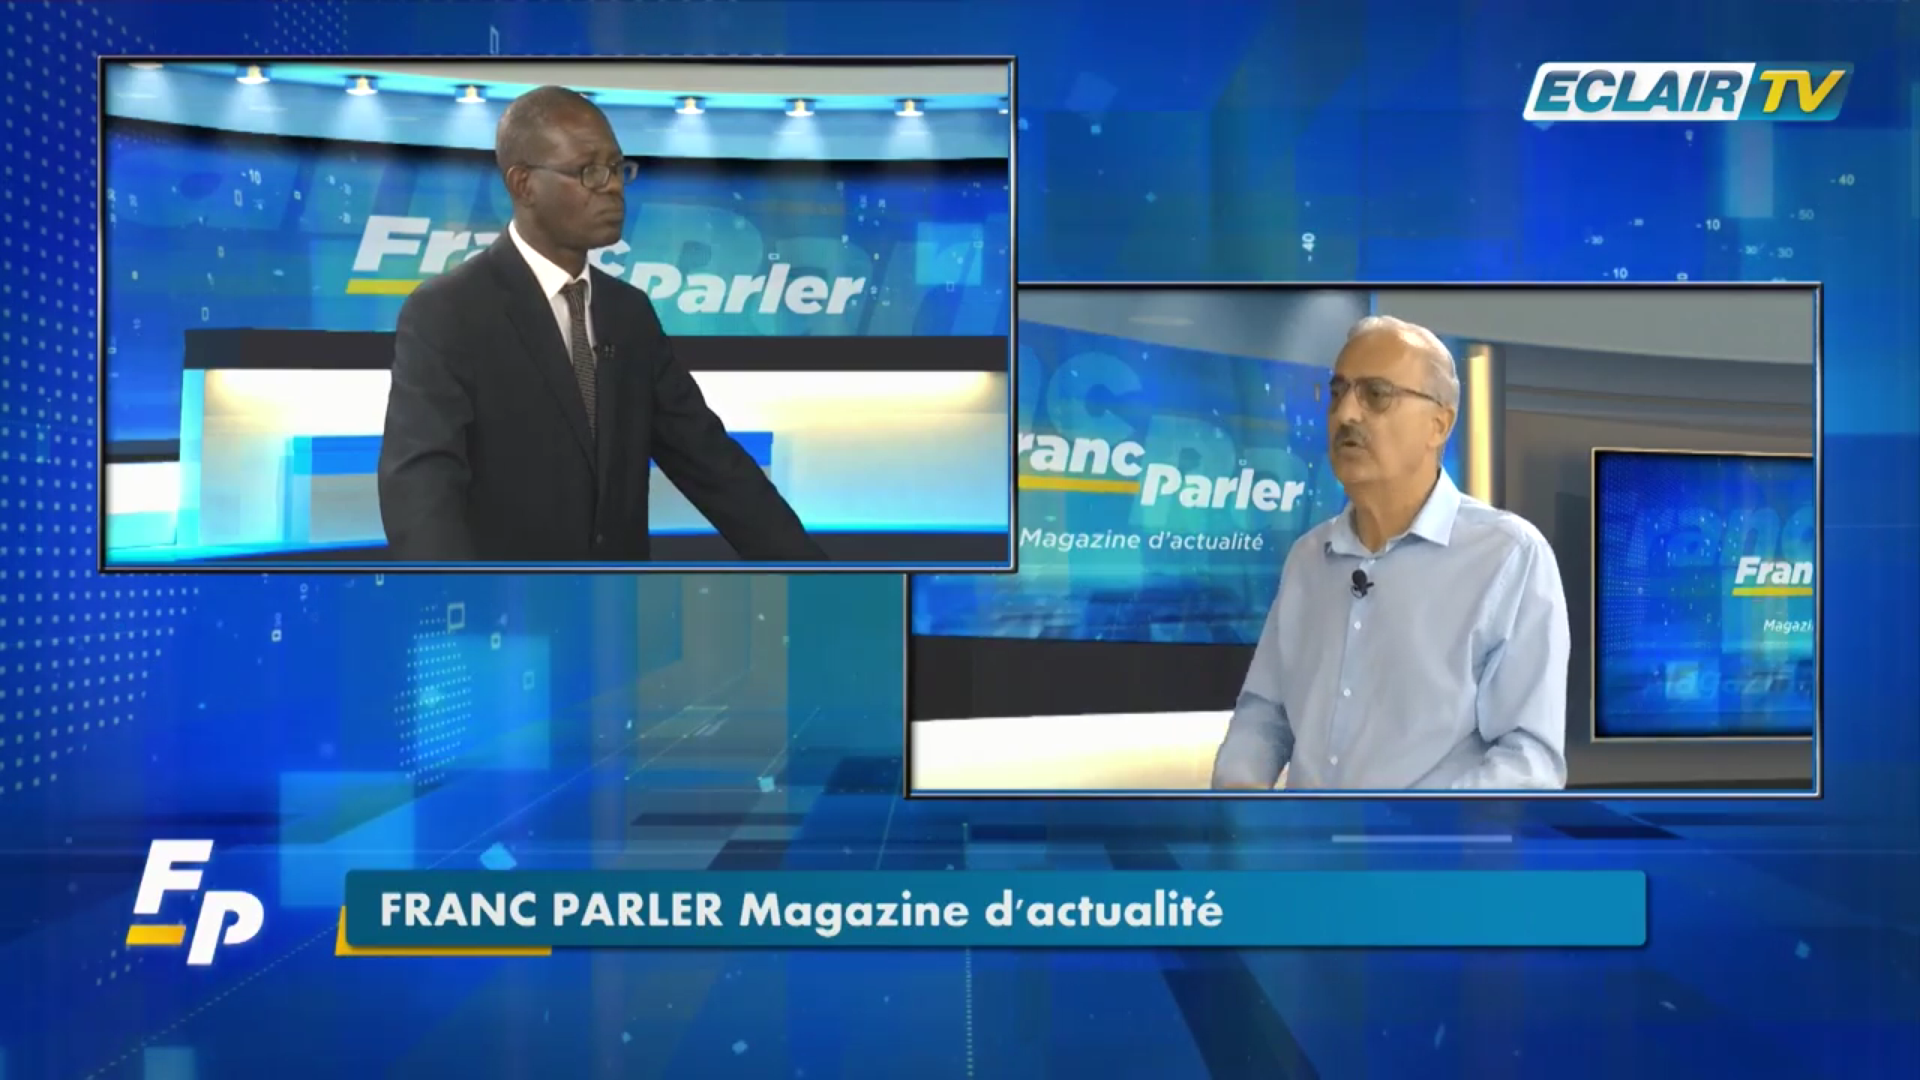 [Vidéo]Onews Guadeloupe. André ATALLAH Maire de Basse Terre Invité de Franc Parler (Eclair TV)